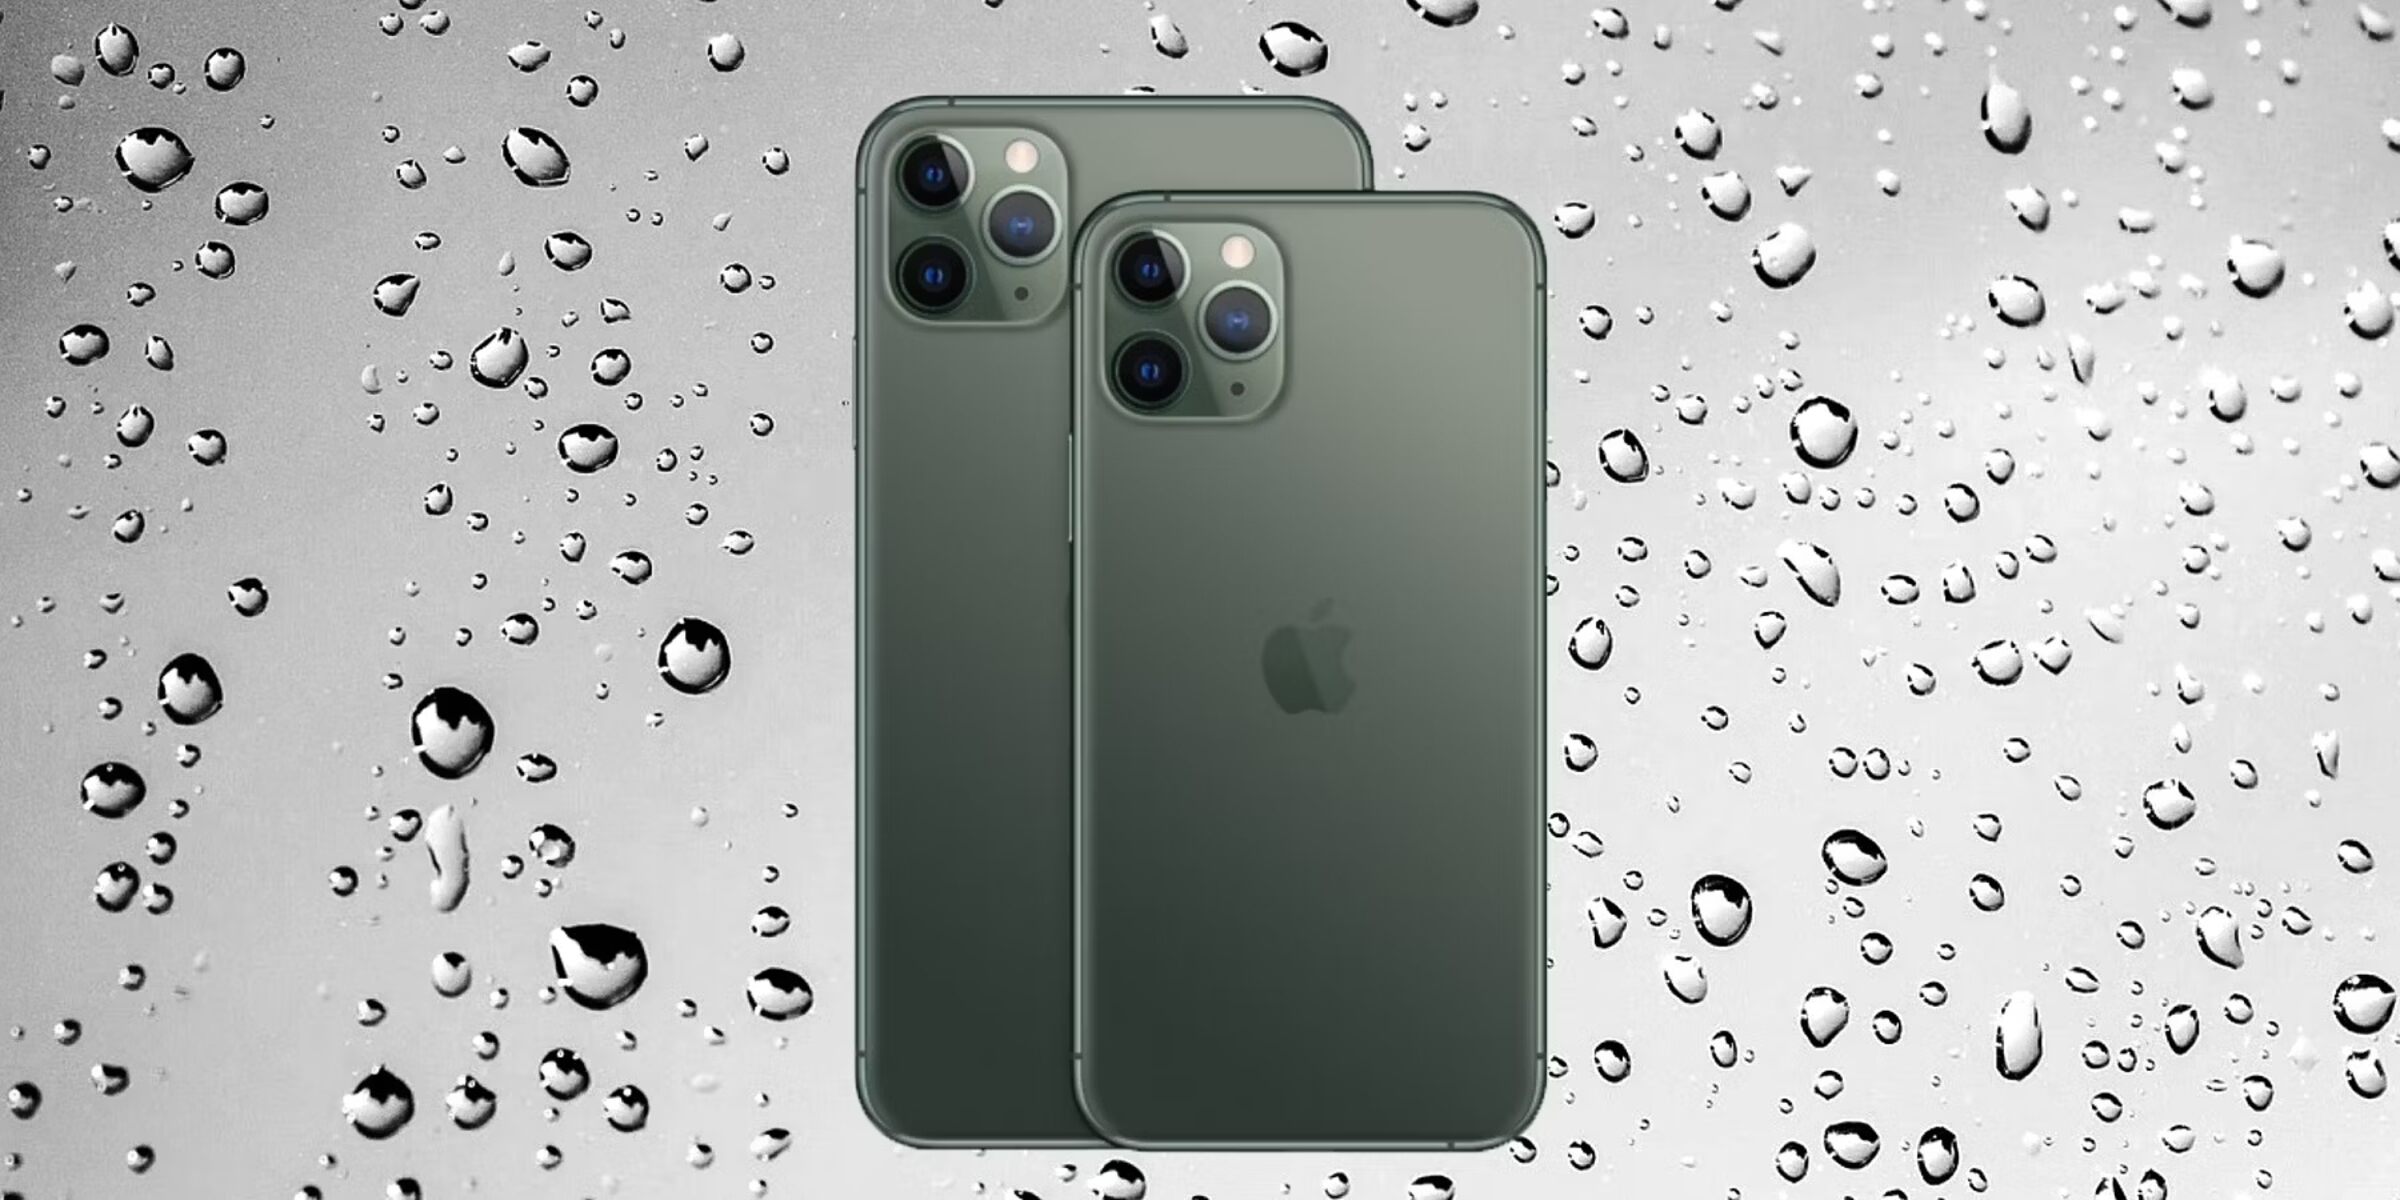 iphone-11-pro-max-waterproof-rating-understanding-water-resistance